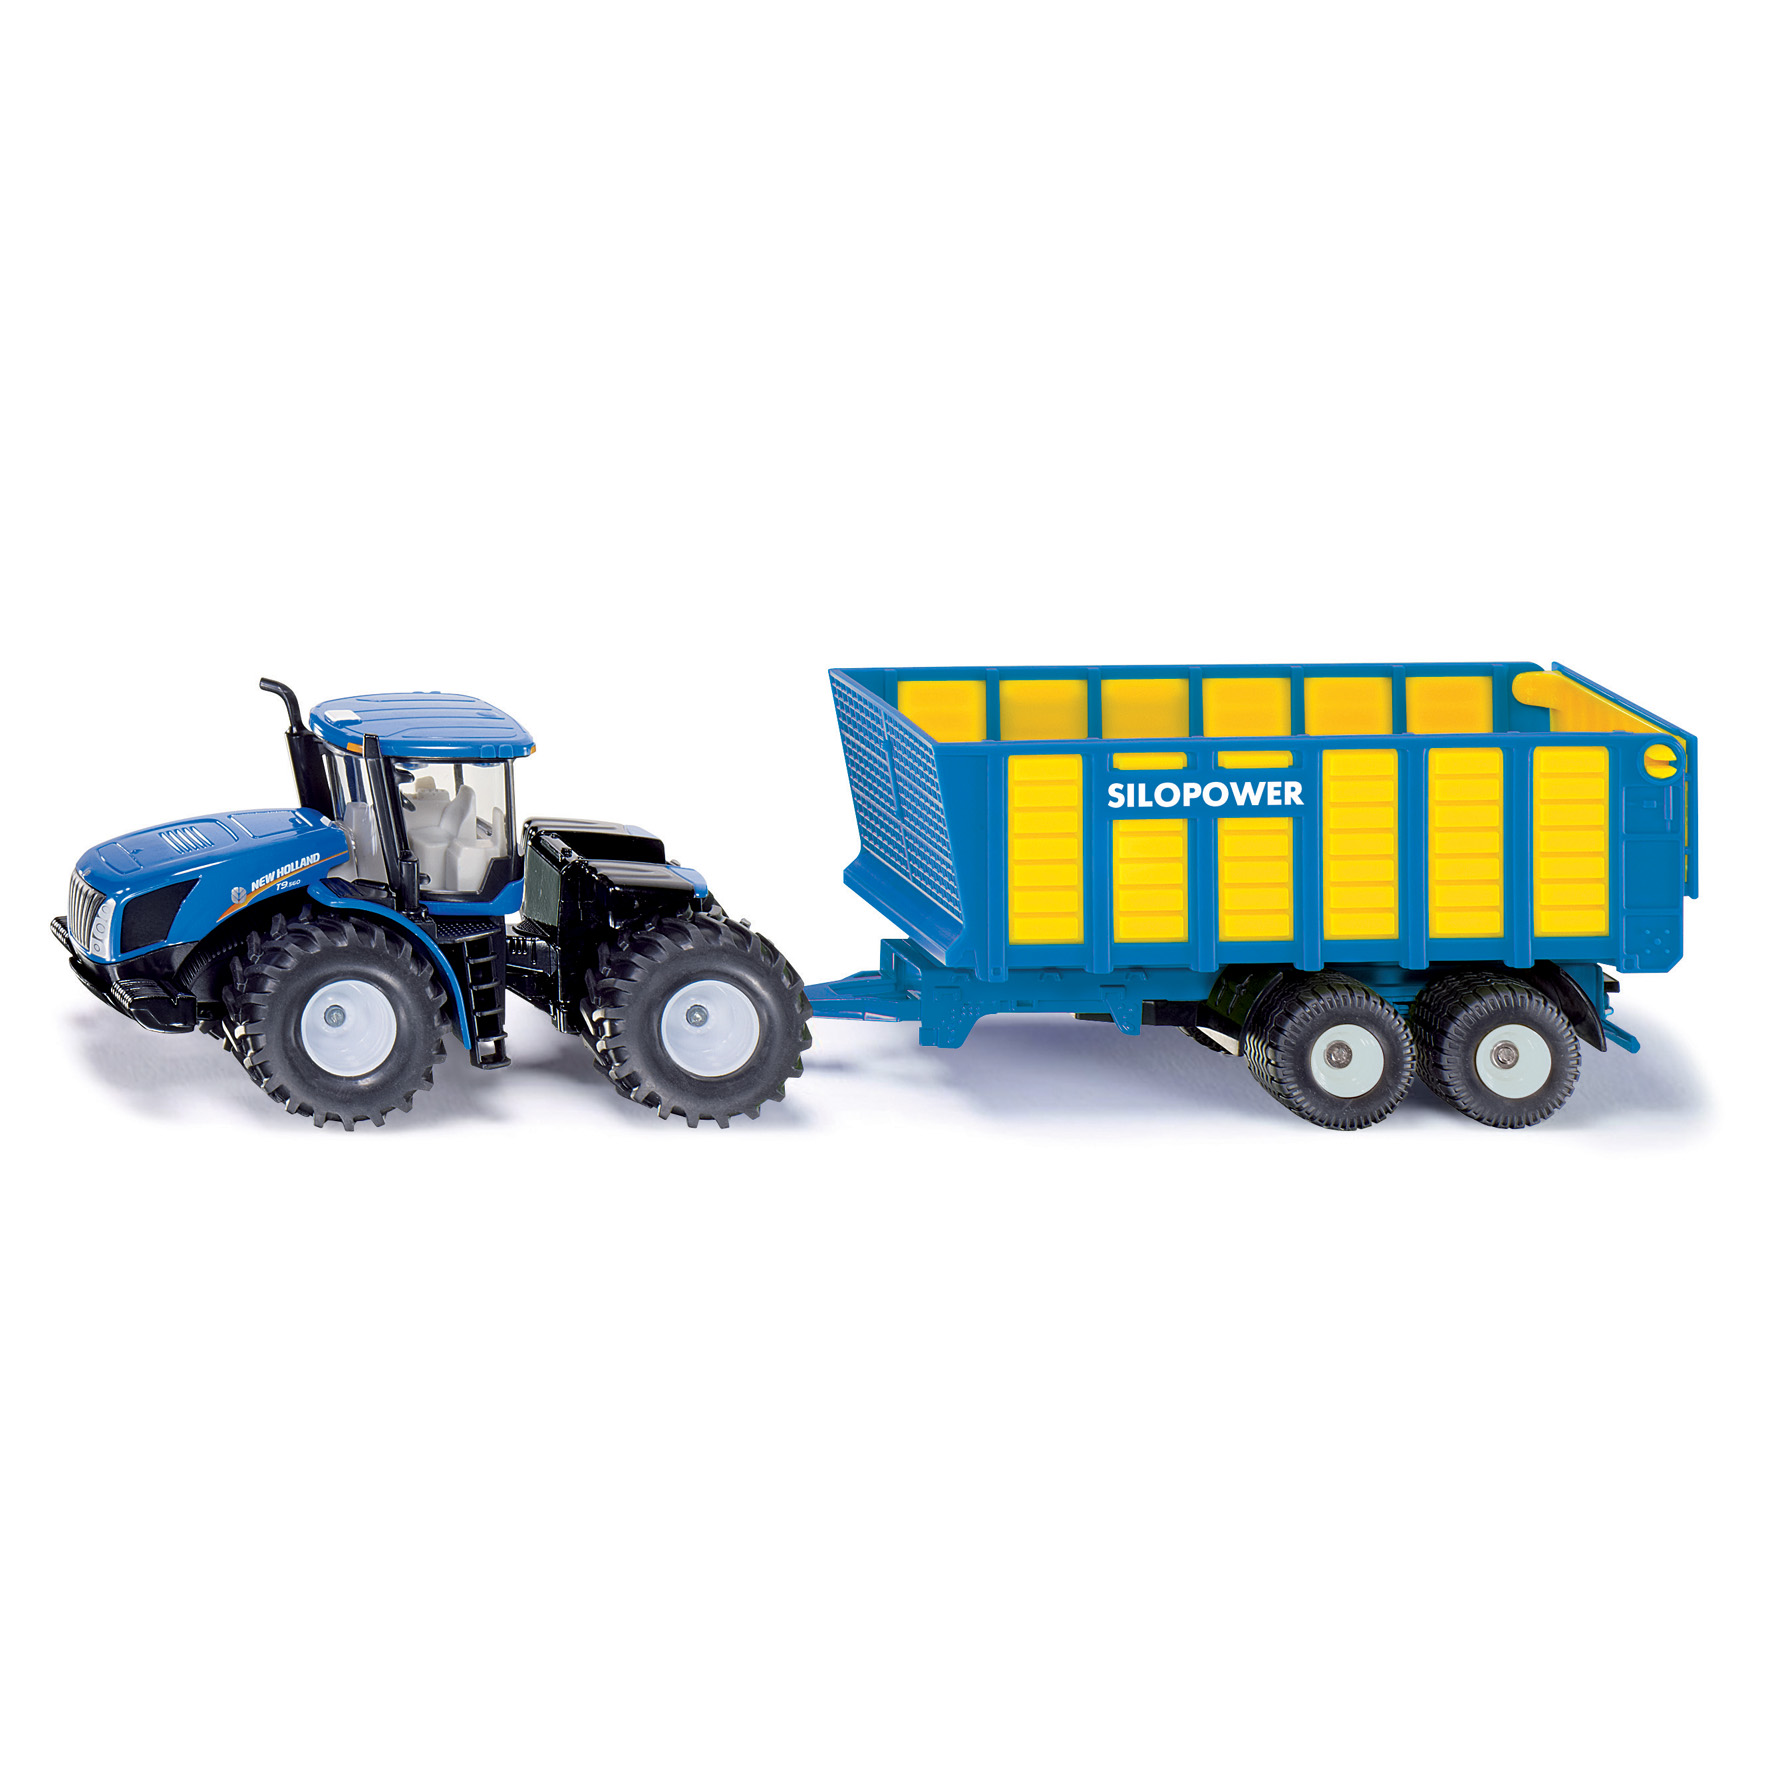 Traktorer & landbrugsmaskiner siku traktor new h t9.560 1:50